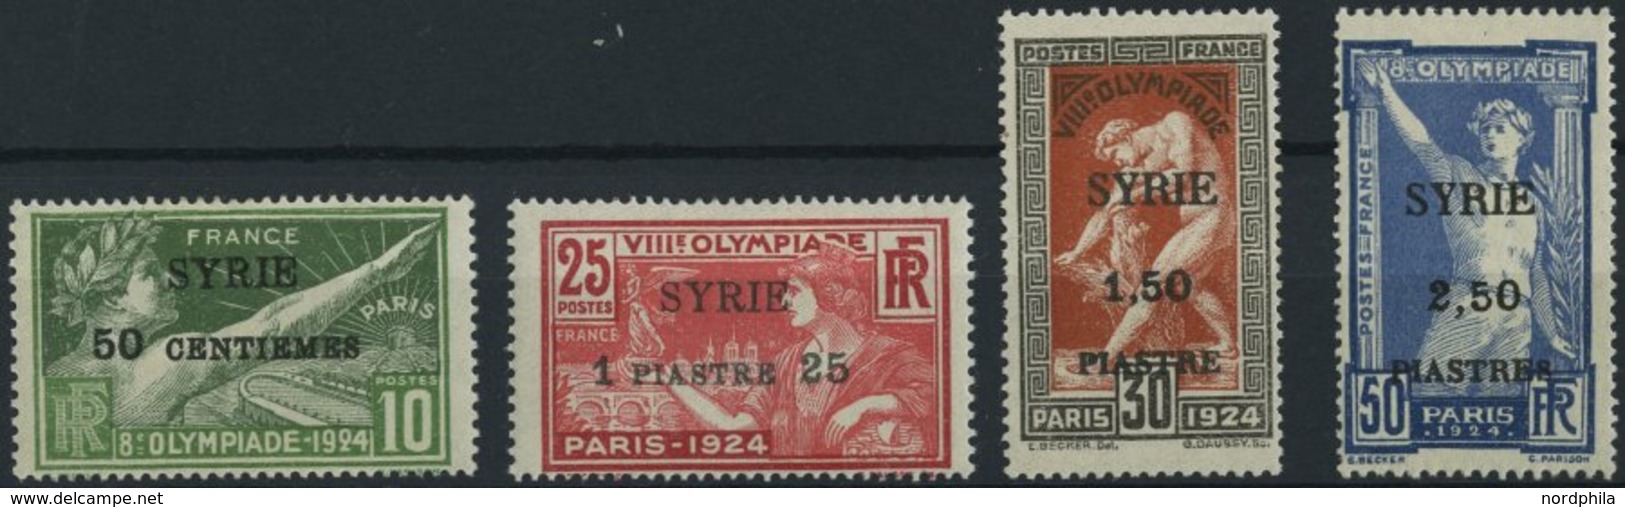 SYRIEN 227-30 *, 1924, Olympische Spiele, Aufdruck SYRIE, Falzreste, üblich Gezähnter Prachtsatz, Mi. 220.- - Syrië